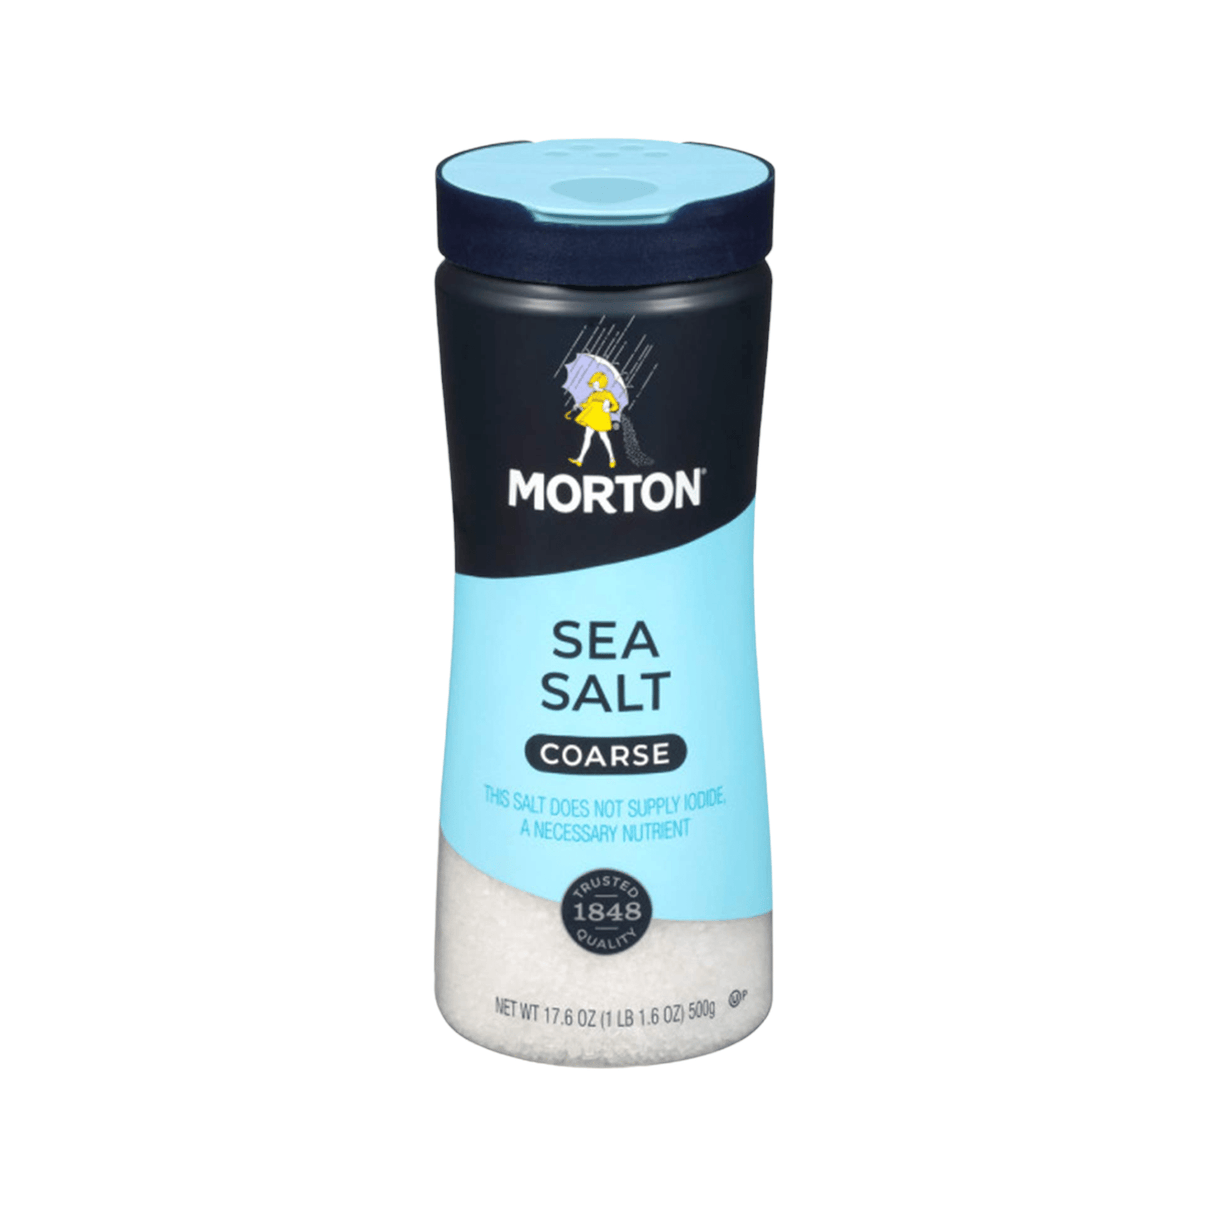 Morton Sea Salt Coarse